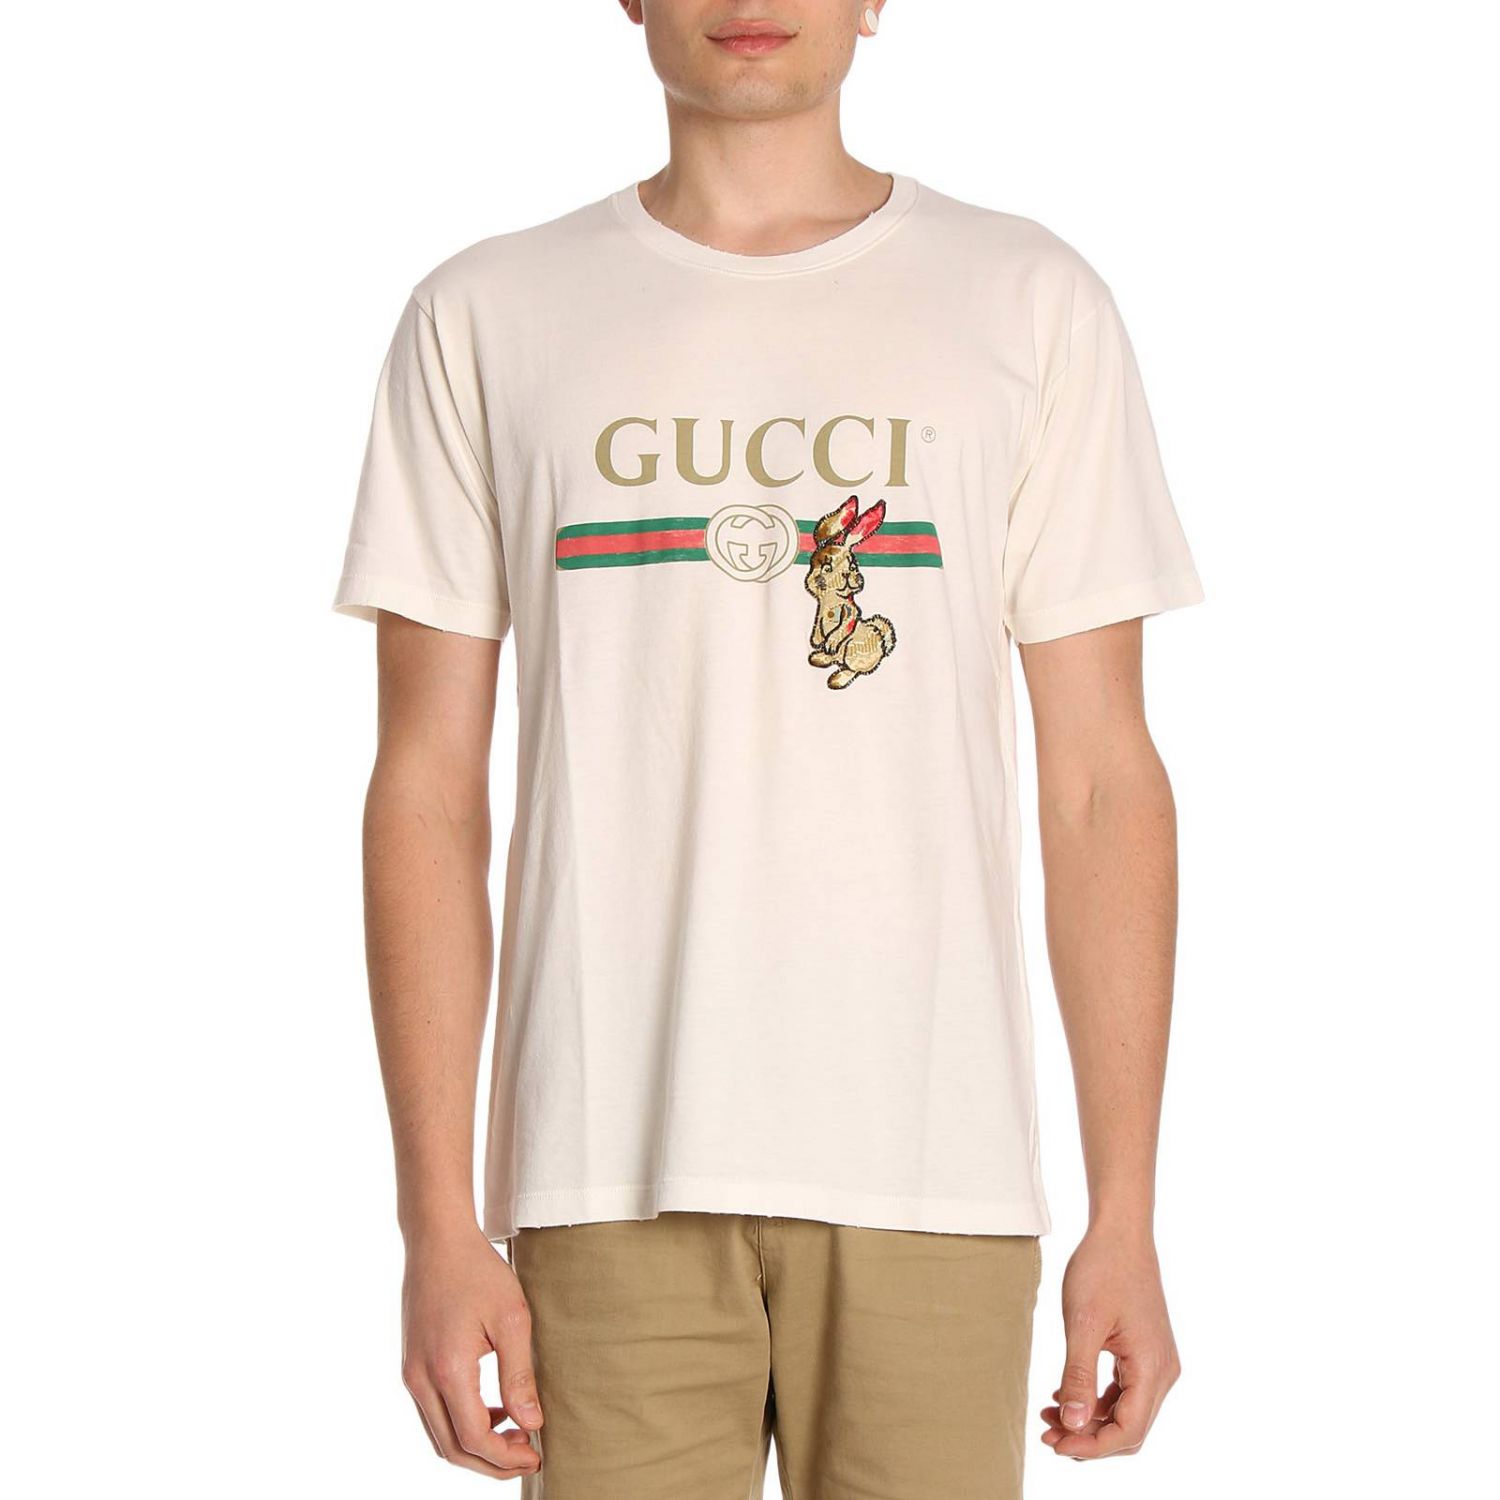 T-shirt in cotone con stampa Classic Gucci Fake e patch coniglio | T-Shirt Gucci  Uomo Bianco | T-Shirt Gucci 493117 X9V42 Giglio IT